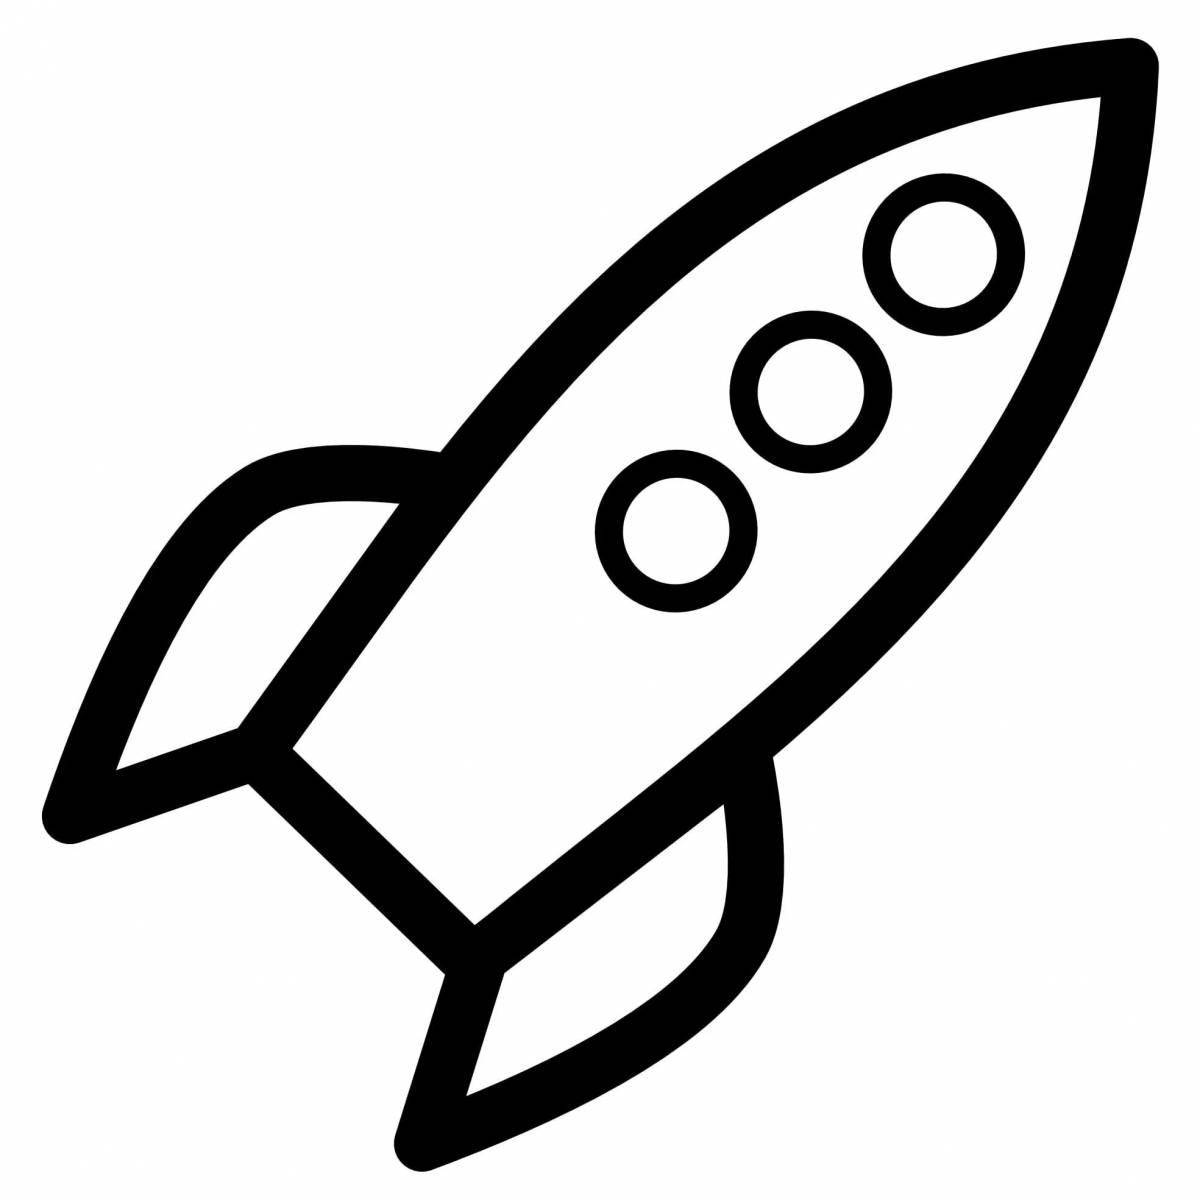 Fancy rocket drawing